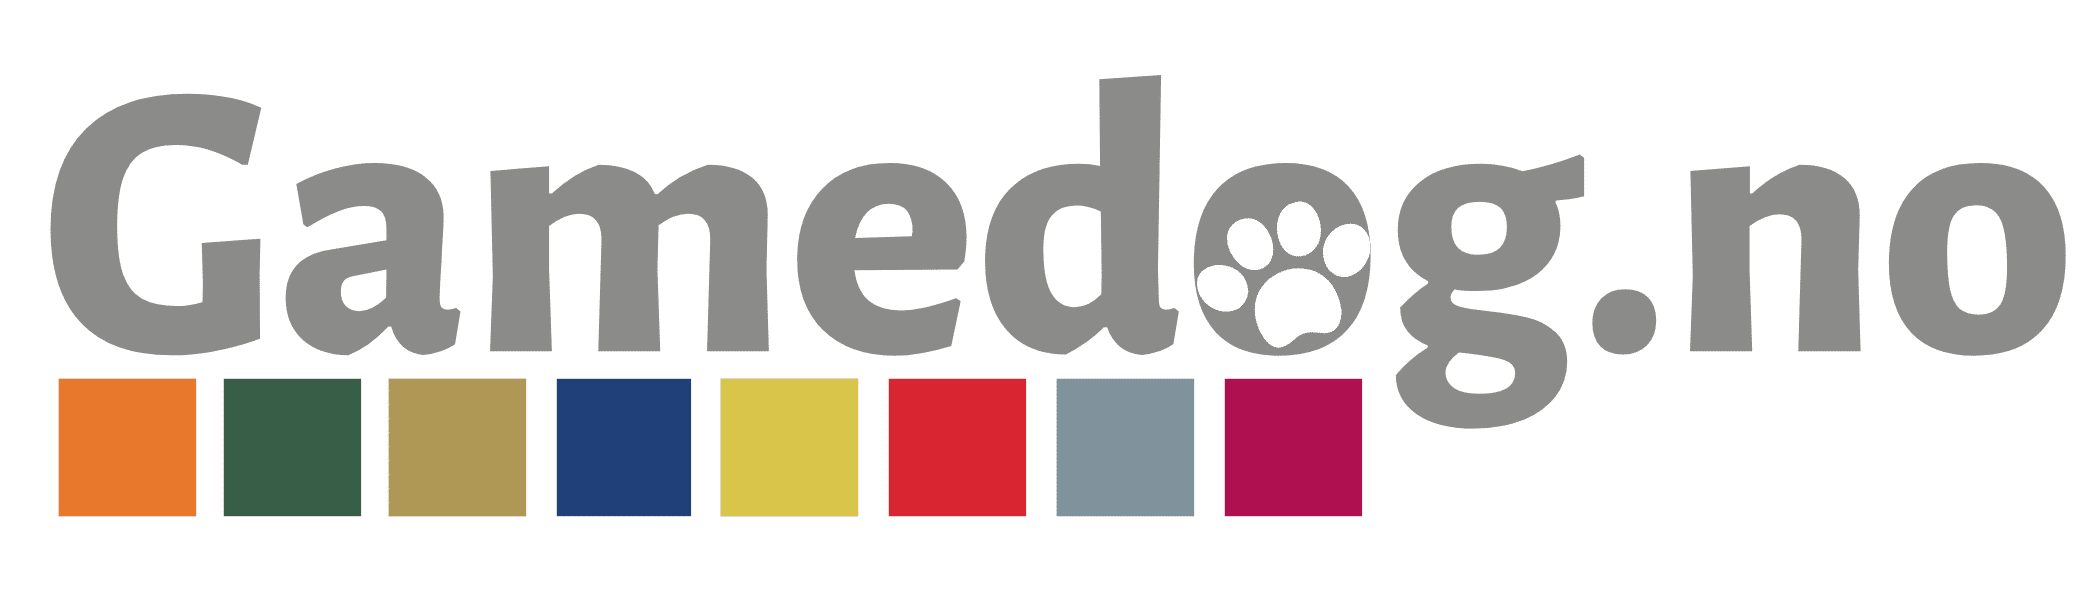 Gamedog Logo